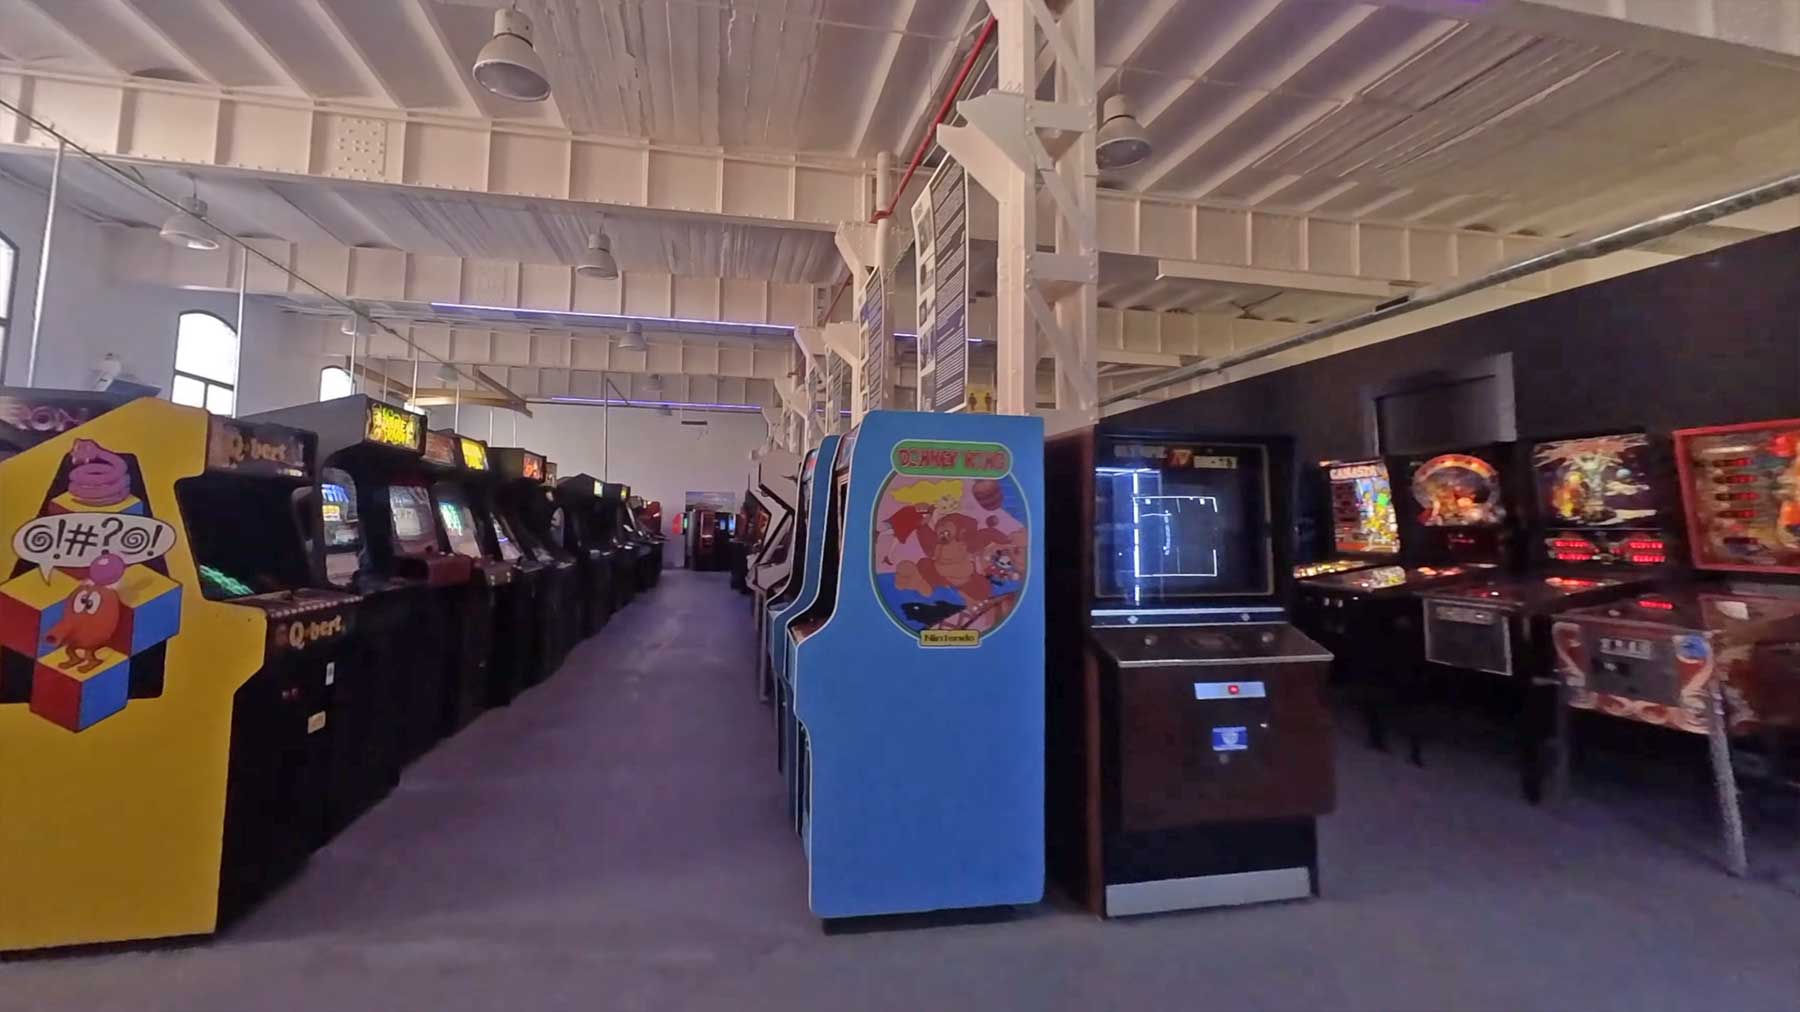 Kameradrohnenflug durch ein Arcade-Spieleautomaten-Museum